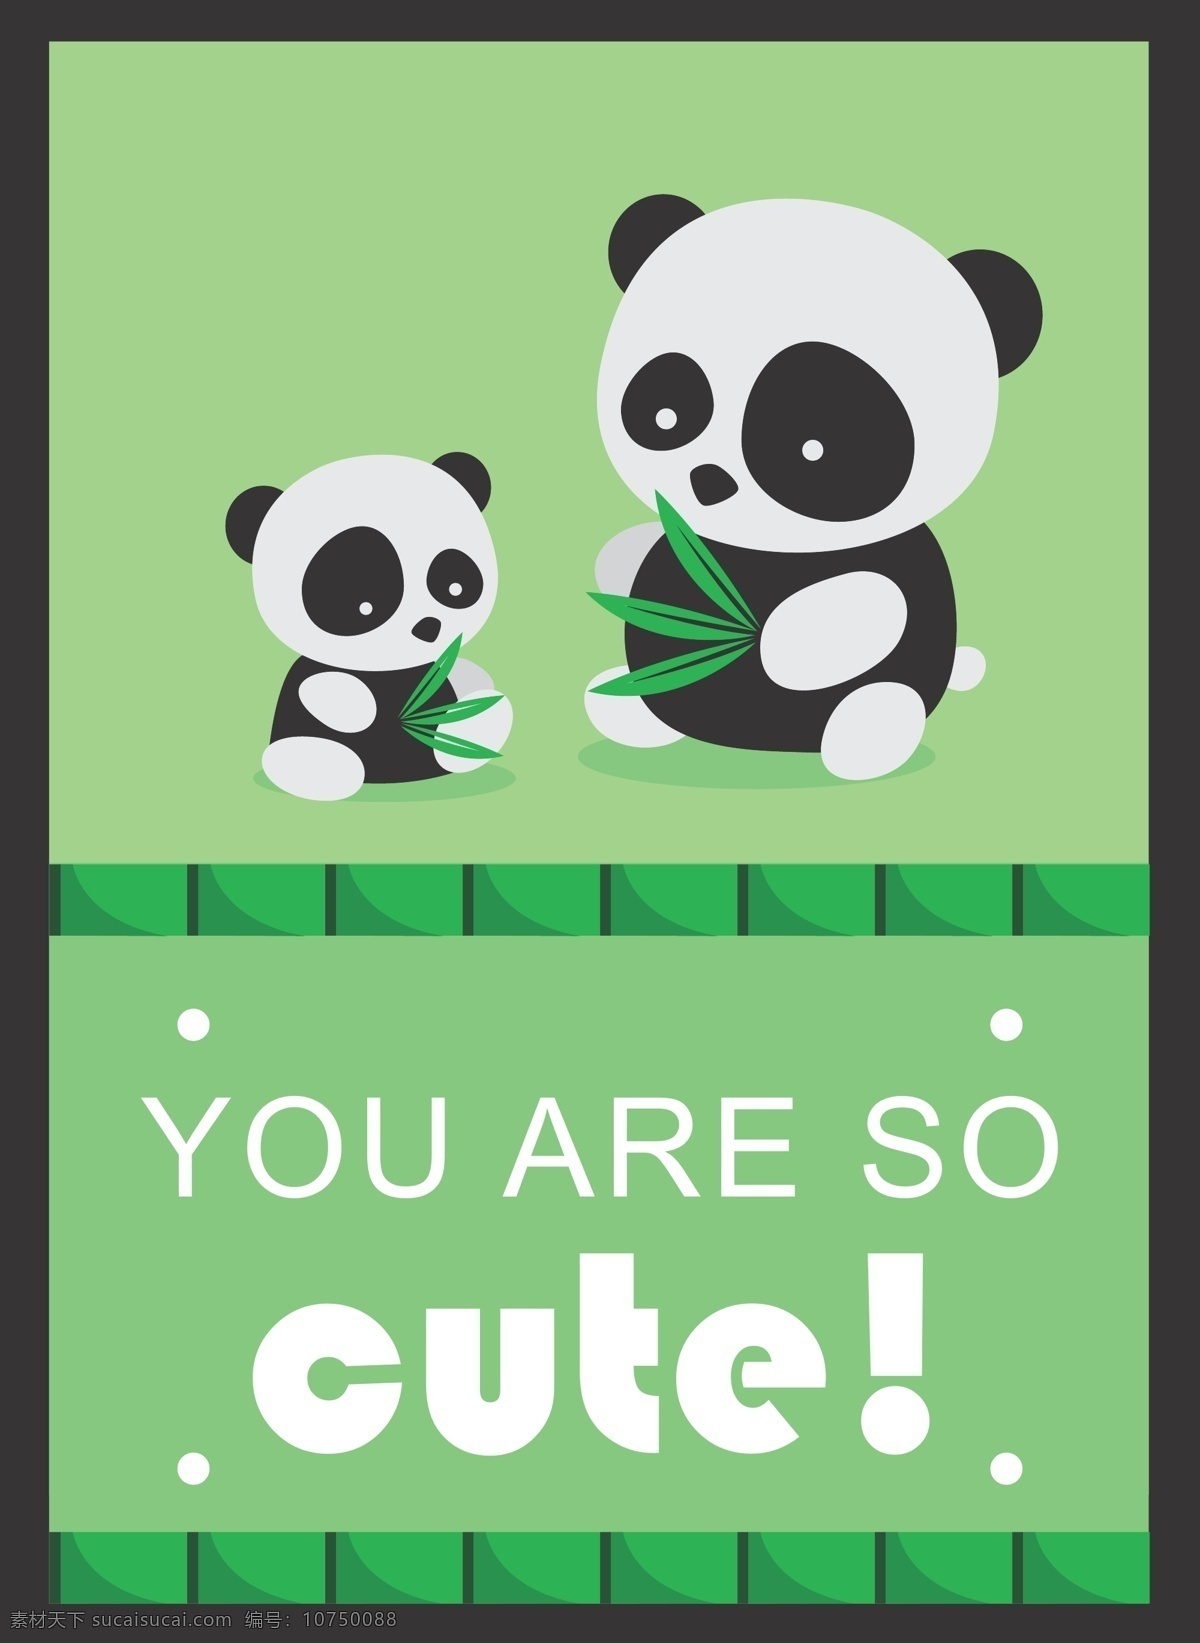 可爱熊猫矢量 可爱熊猫 熊猫矢量 熊猫 卡通熊猫 共享设计矢量 生物世界 野生动物